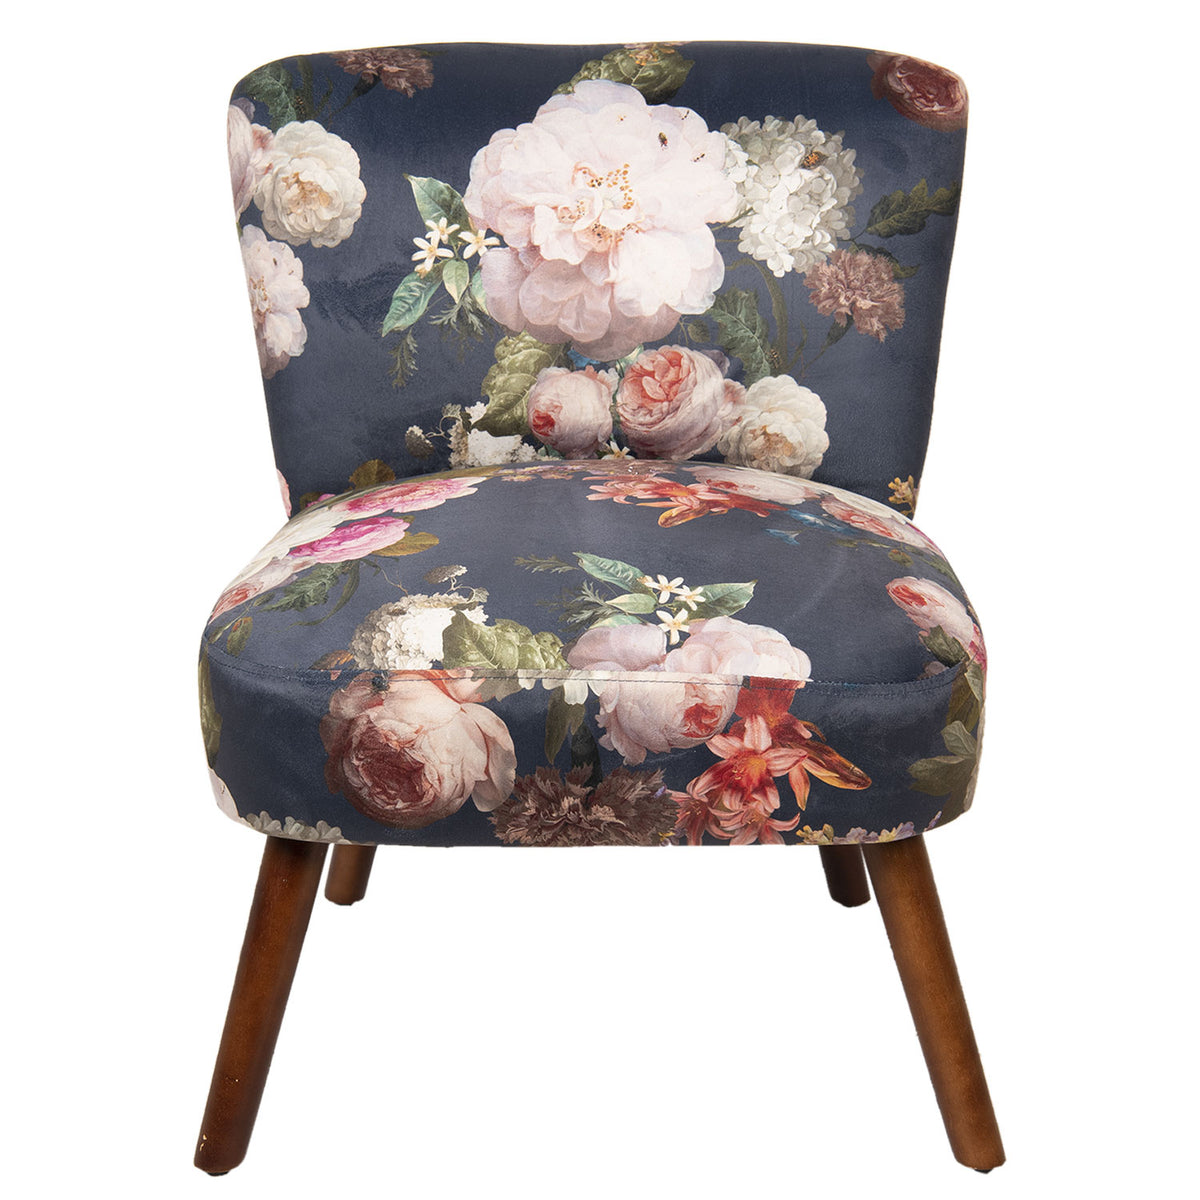 Lille stol med blomster print 51x61x77cm